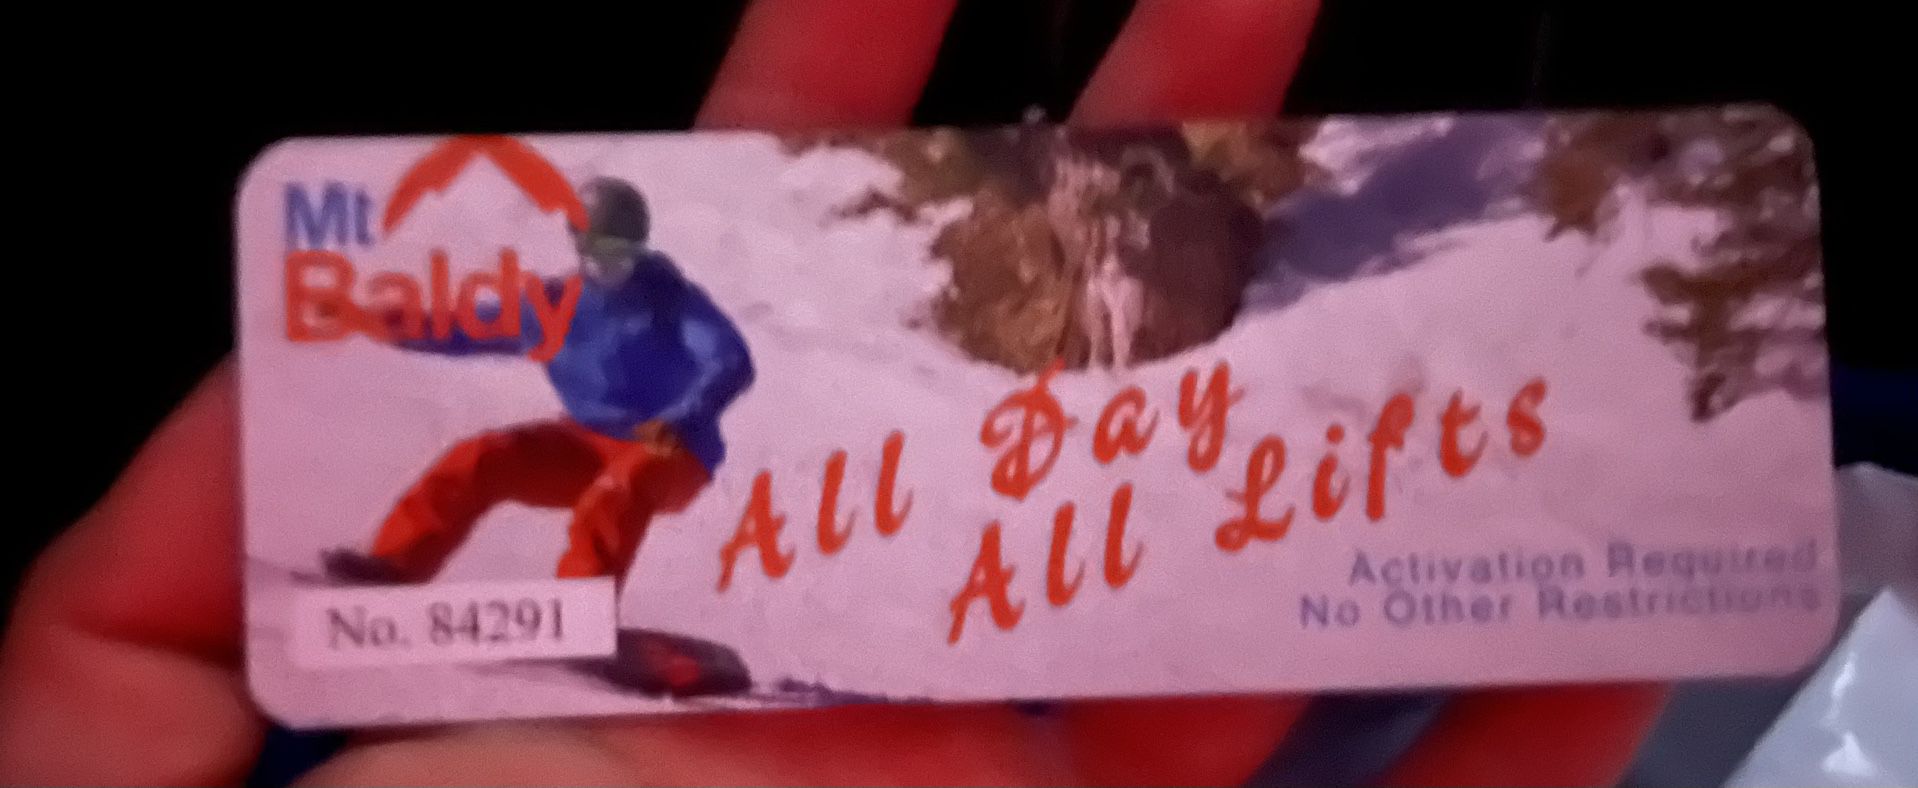 Mt Baldy Ski Tickets